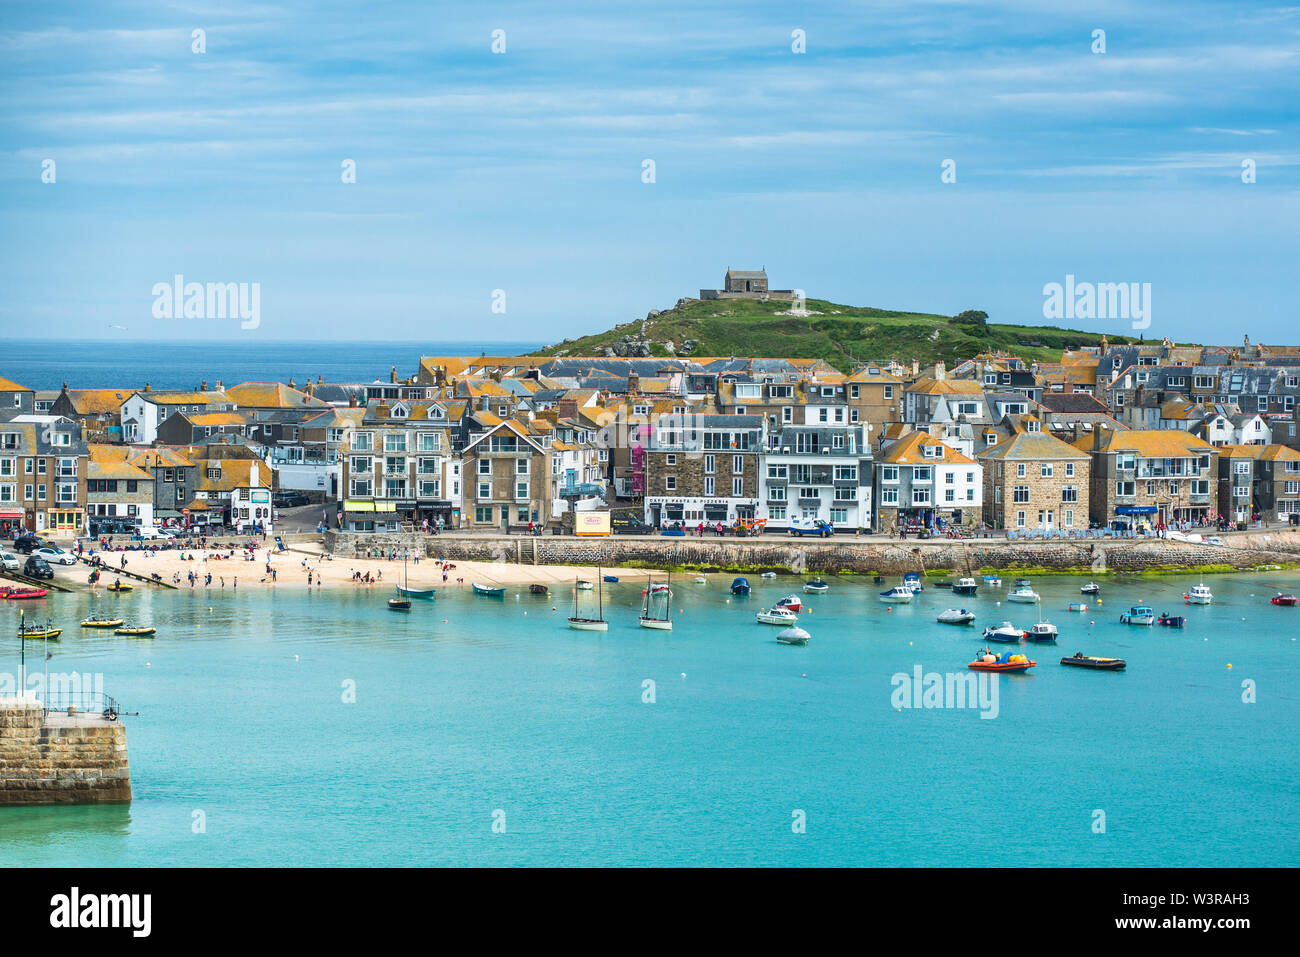 Erhöhten Blick auf den beliebten Badeort St. Ives, Cornwall, England, Vereinigtes Königreich, Europa Stockfoto